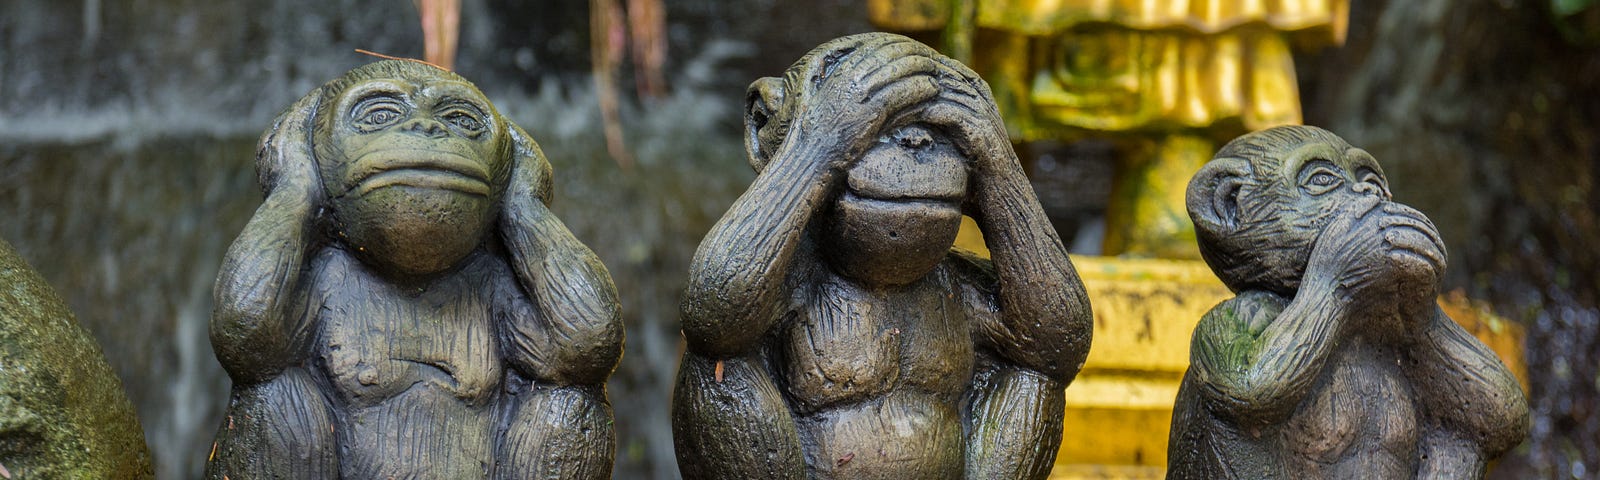 hear no evil, see no evil, speak no evil monkey statues